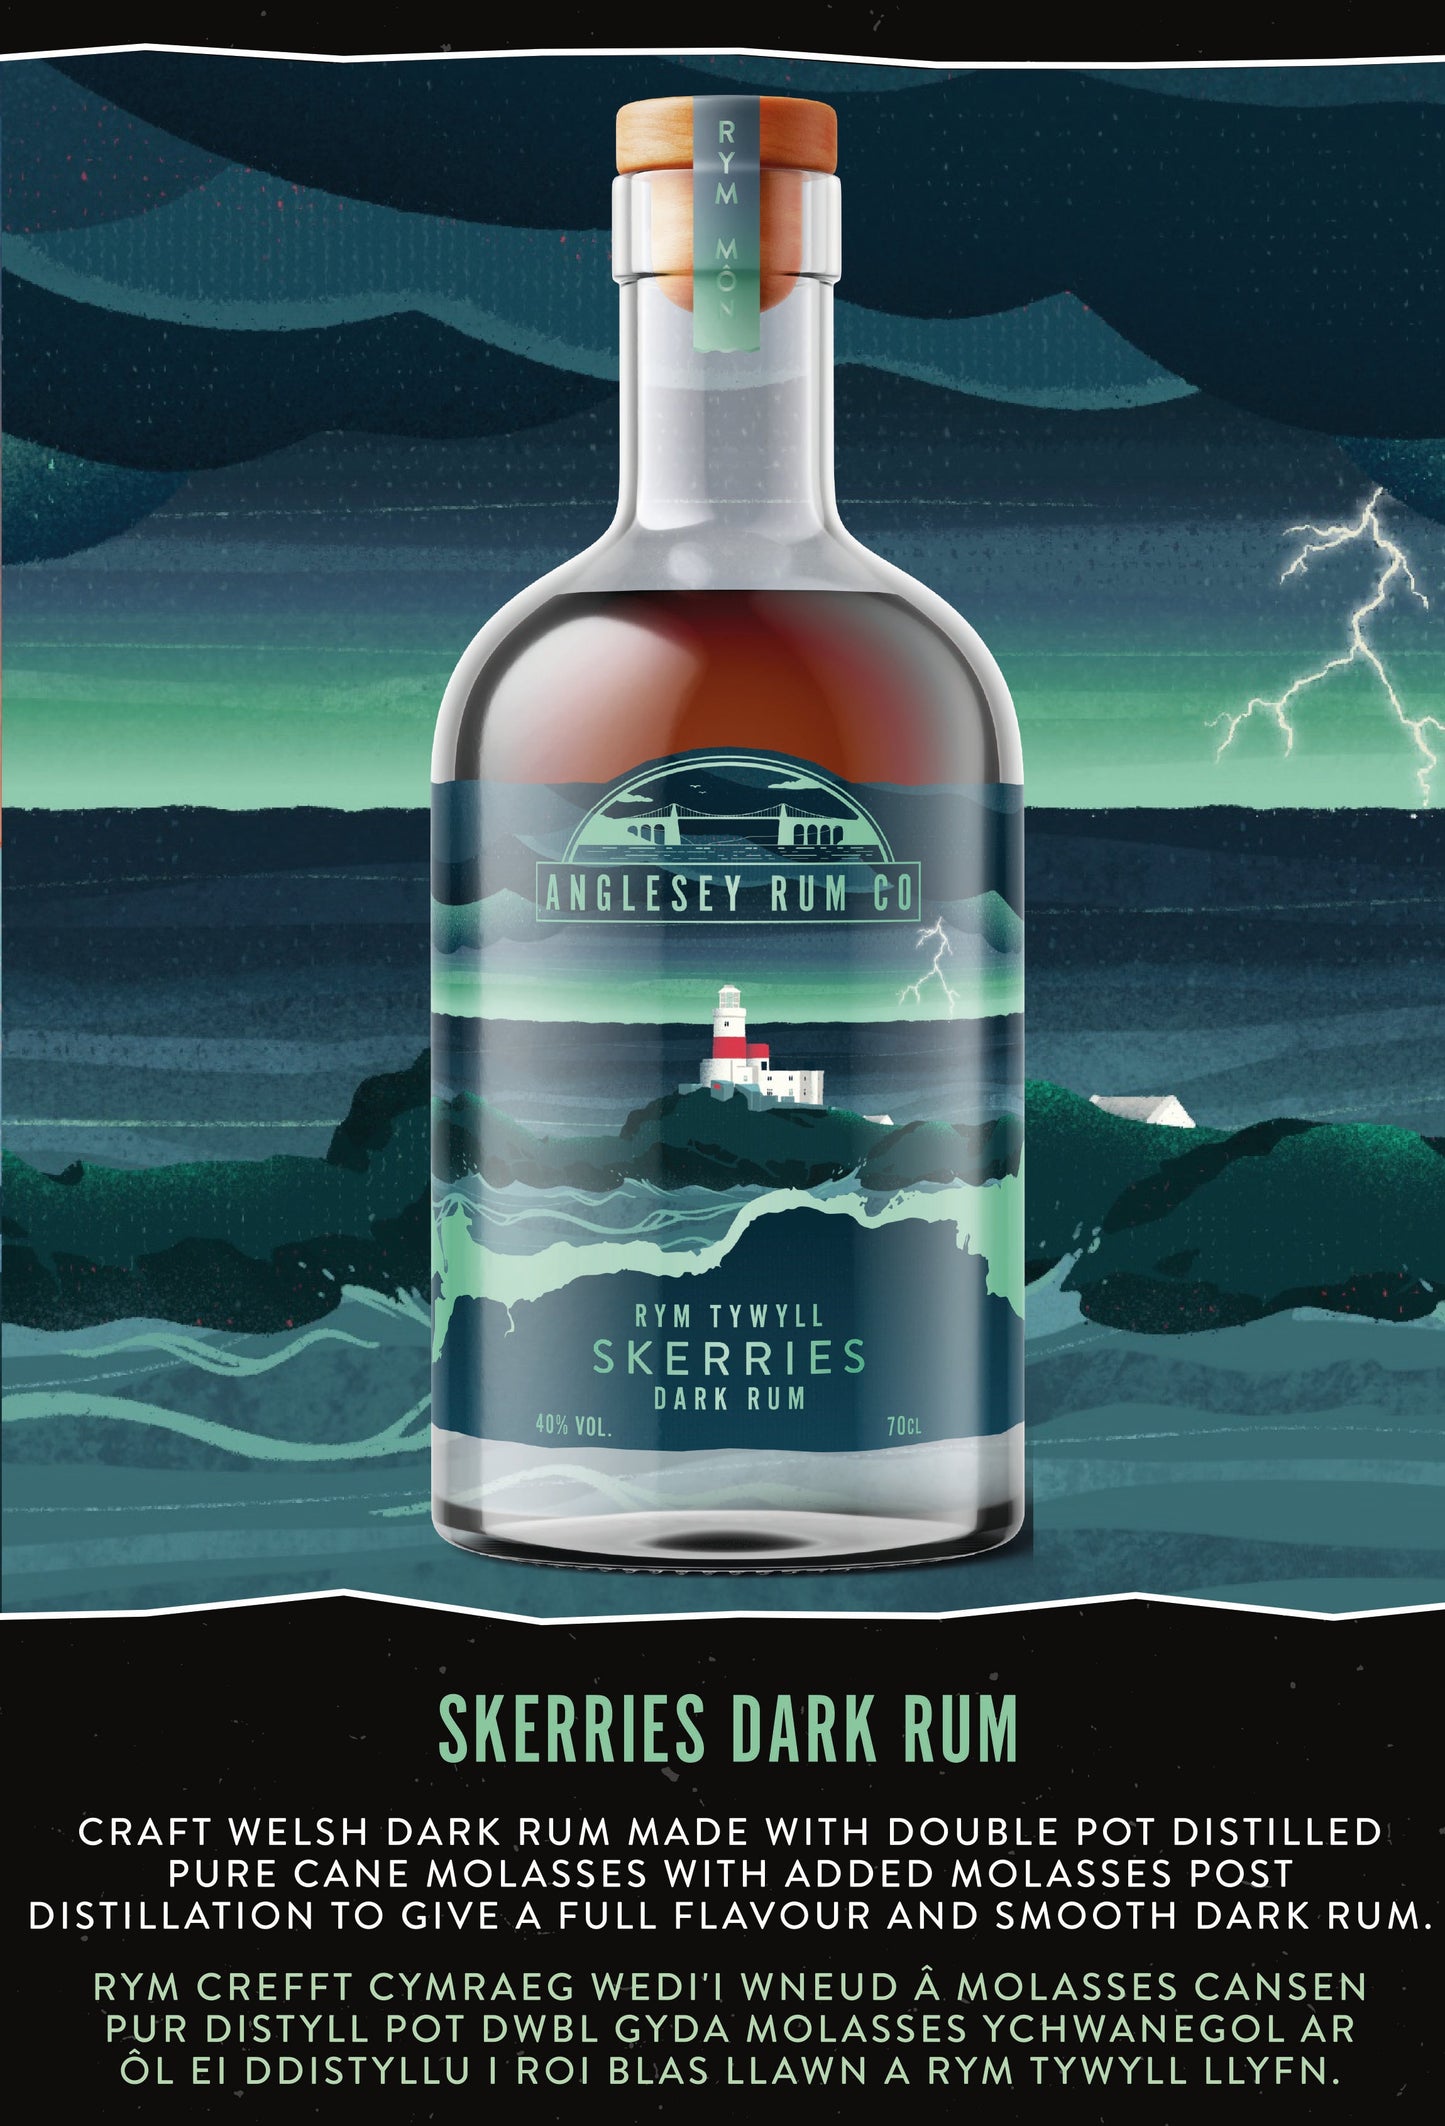 Skerries Dark Rum